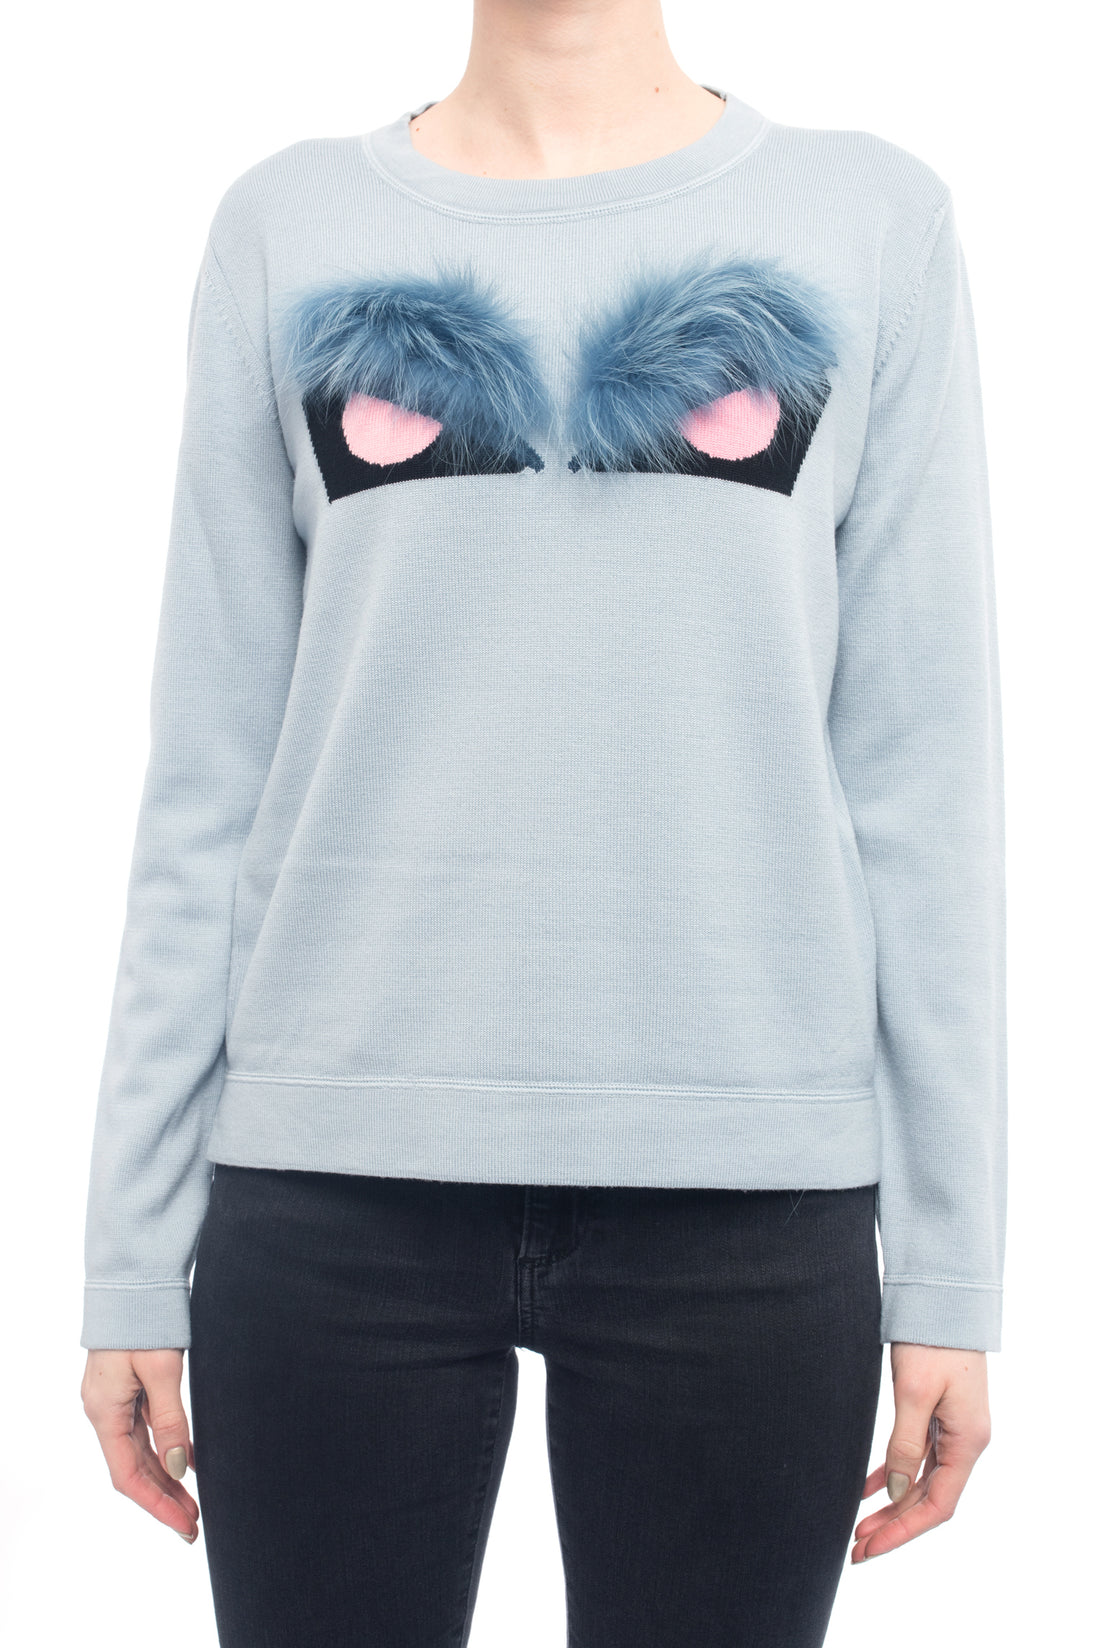 Fendi Light Blue and Pink Knit Monster Bag Bug Fur Eyes Sweater - – I MISS YOU VINTAGE